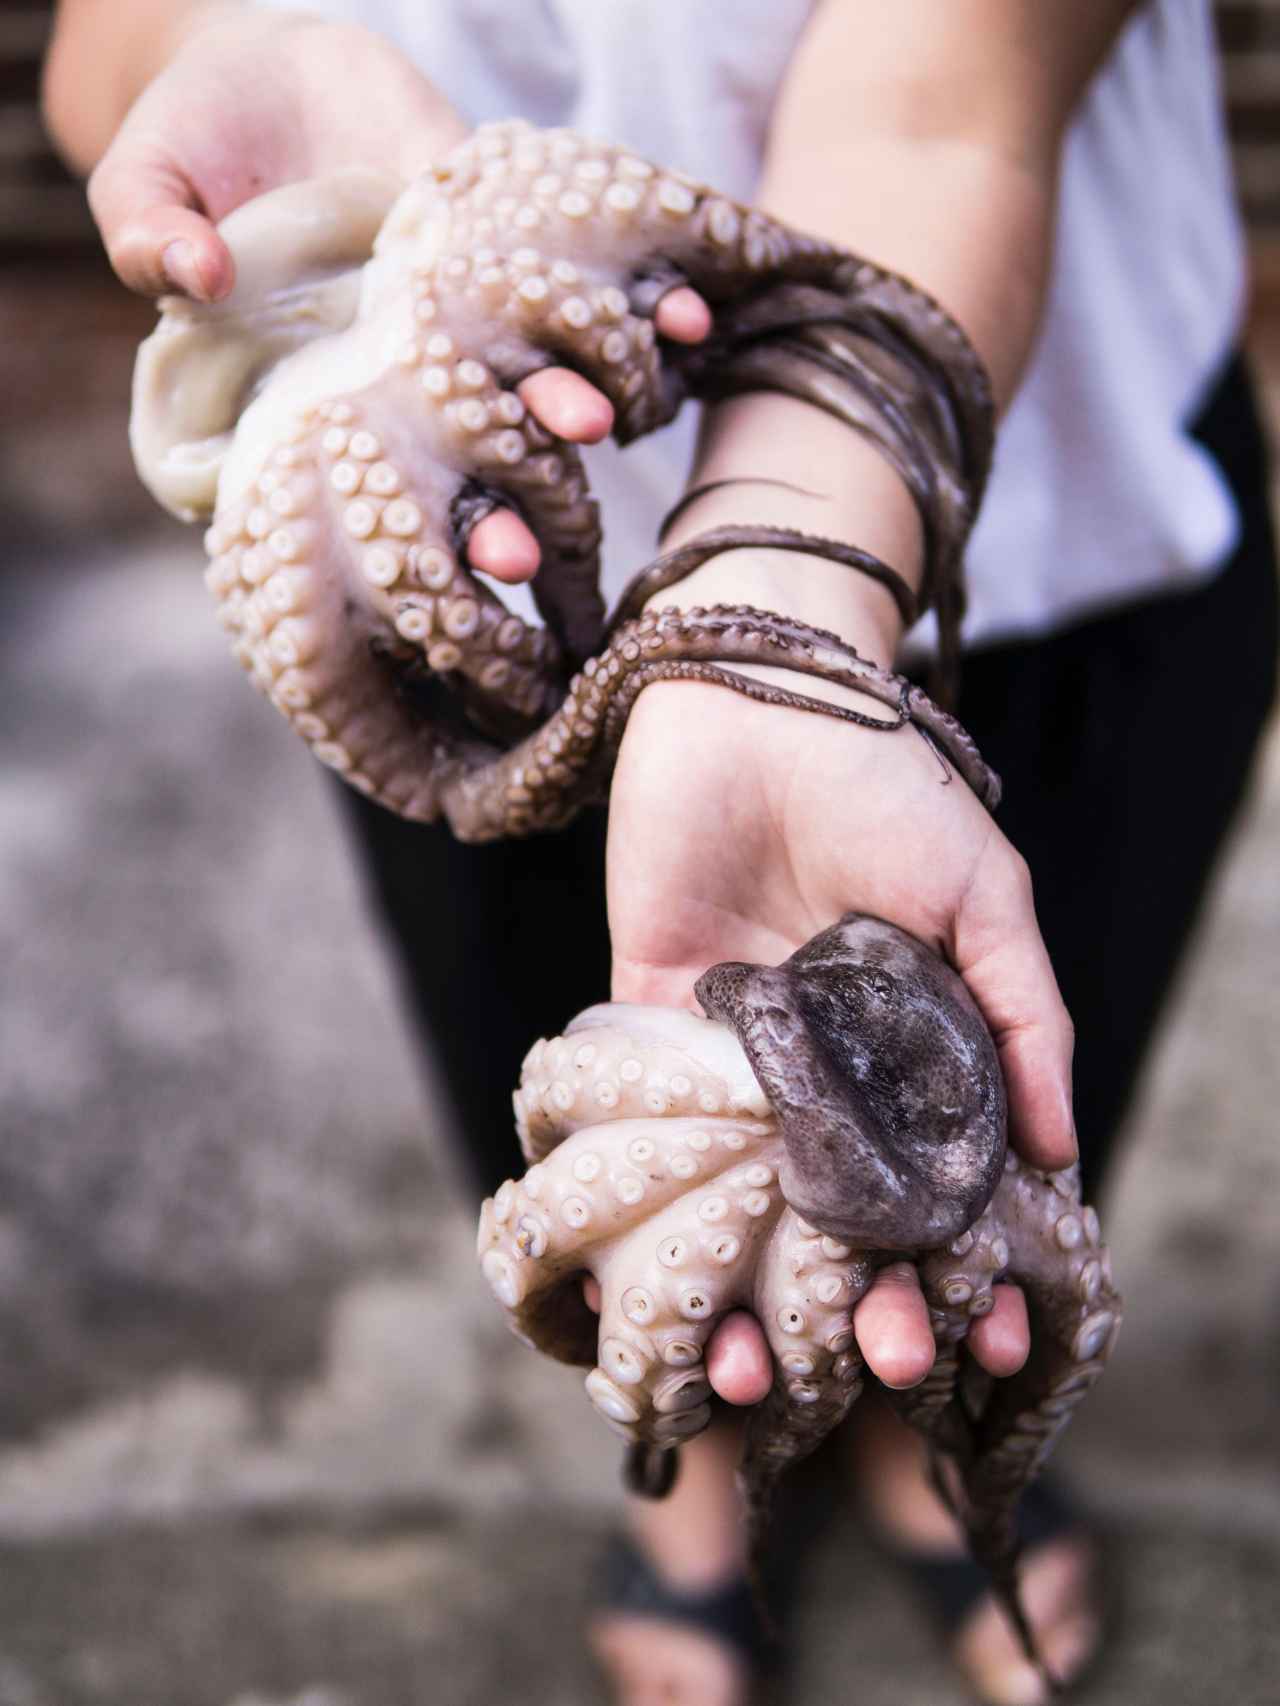 Una persona sujeta dos pulpos recién pescados en sus manos.